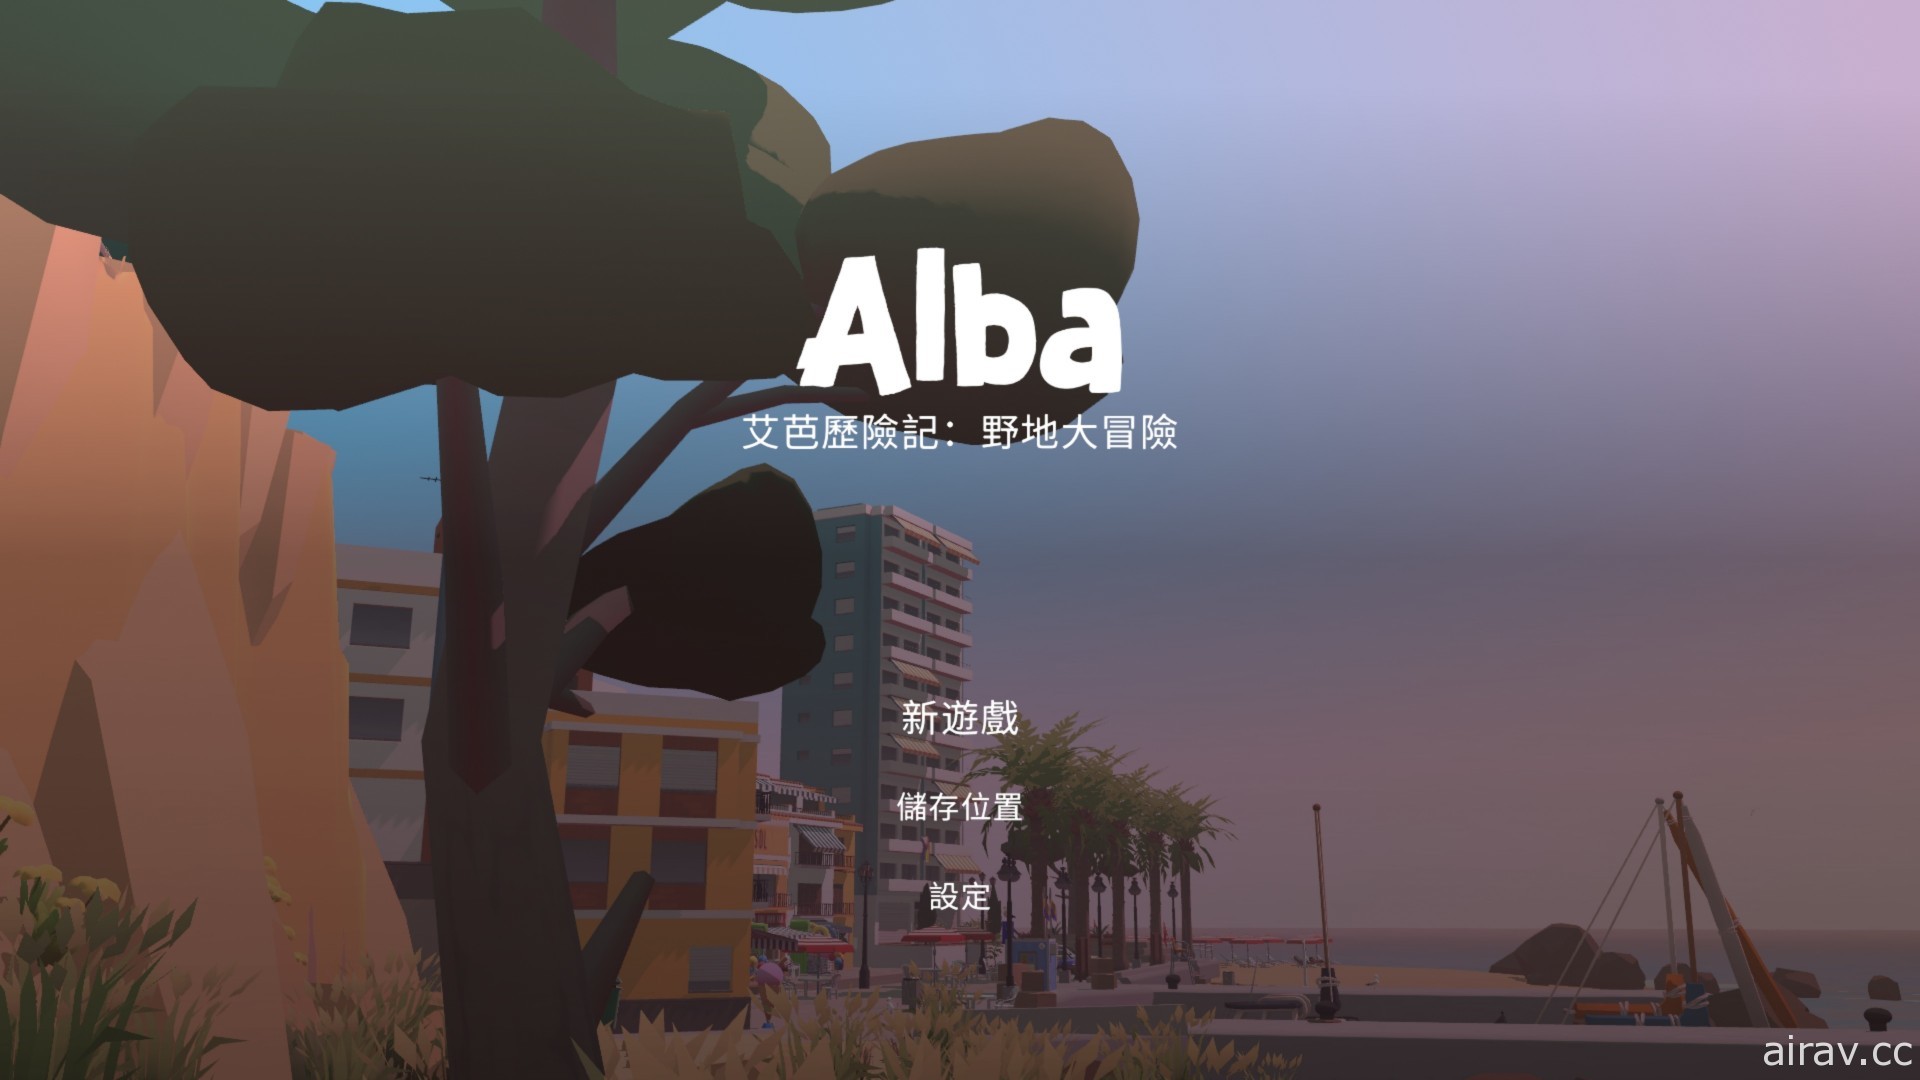 《艾芭历险记：野地大冒险》家用主机版今日上市 支援繁体中文语系